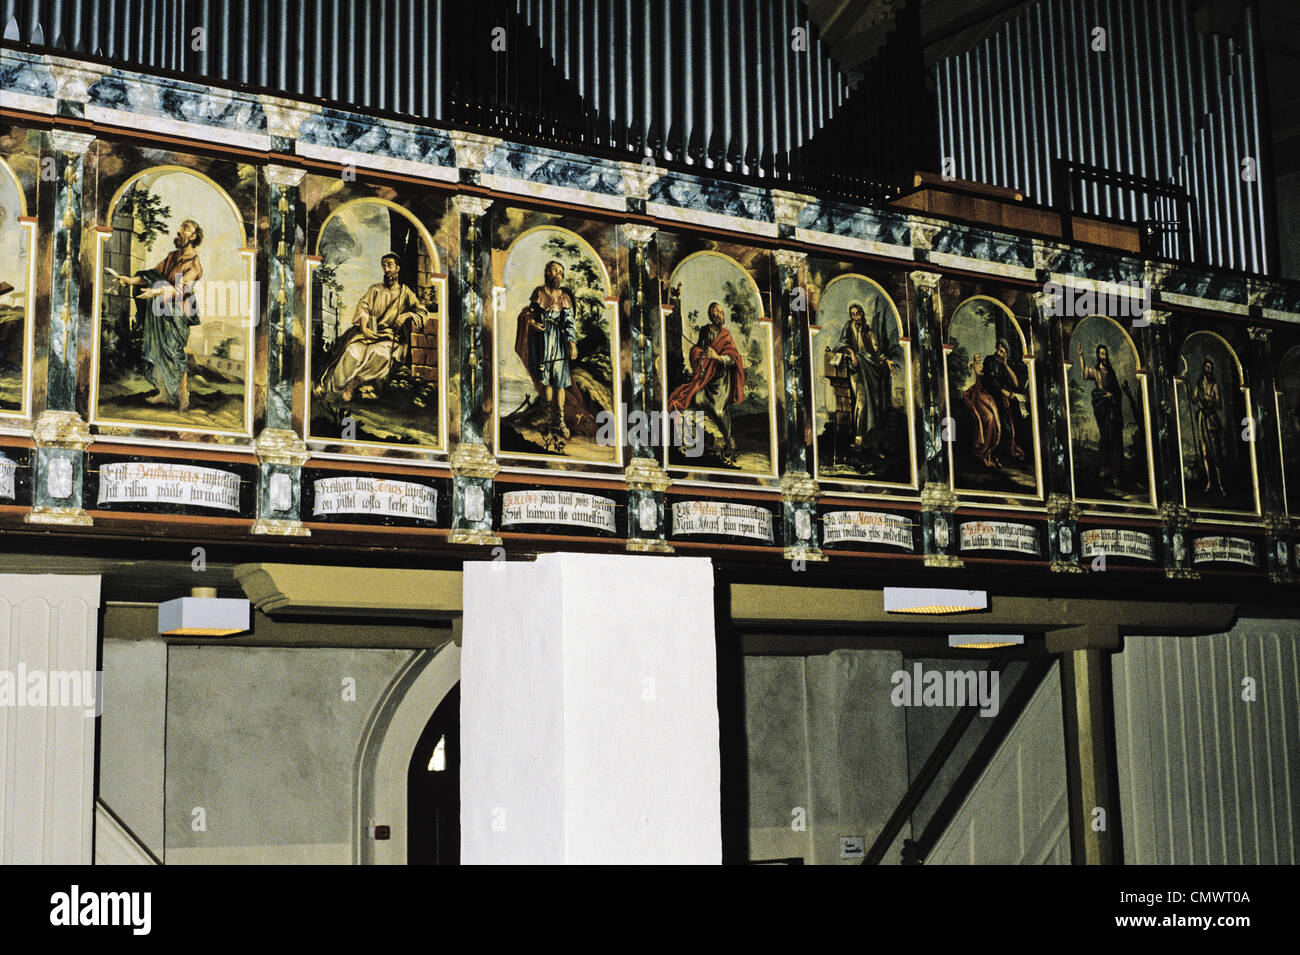 Peintures (1751) des apôtres près de l'orgue dans l'église de Saint Michel (construit en 1681-1689) - Finlande, Paimio Banque D'Images